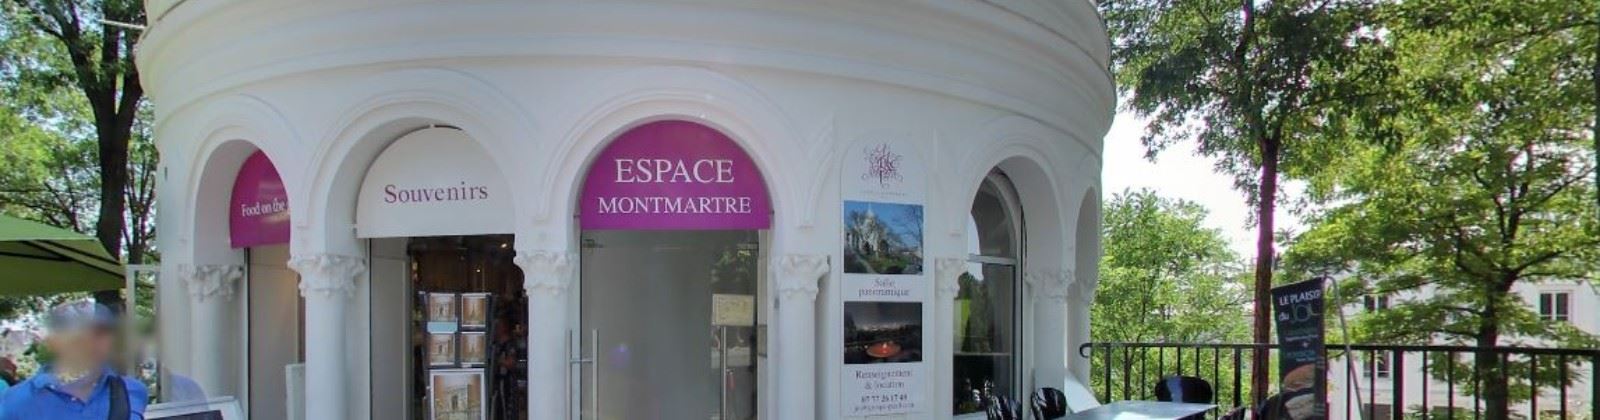 OLEVENE image - espace-montmartre-olevene-hotel-restaurant-salle-reunions-booking-